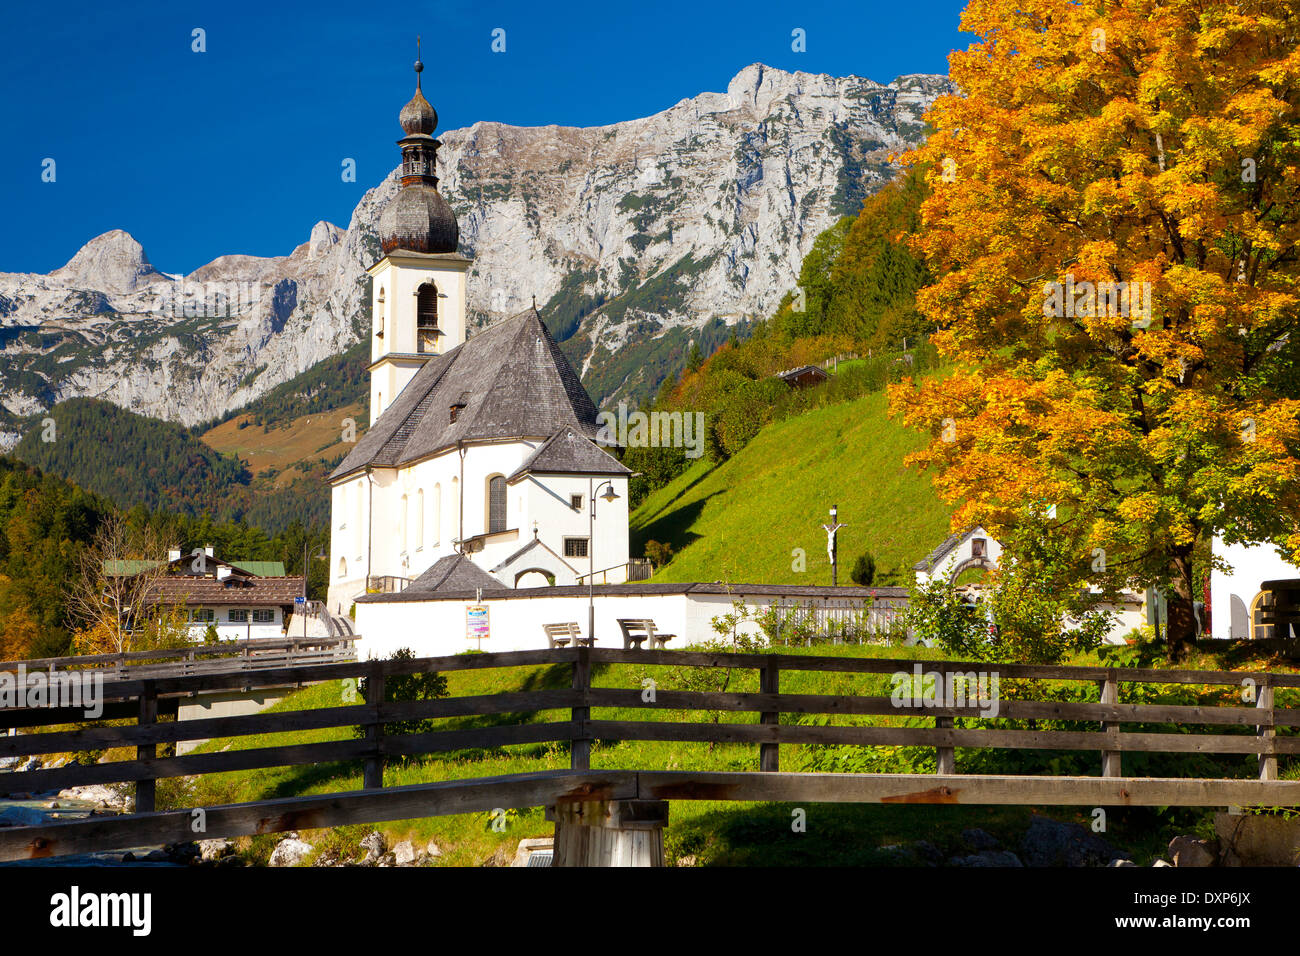 En automne, l'église de Ramsau Ramsau, près de Berchtesgaden, en Bavière, Allemagne Banque D'Images